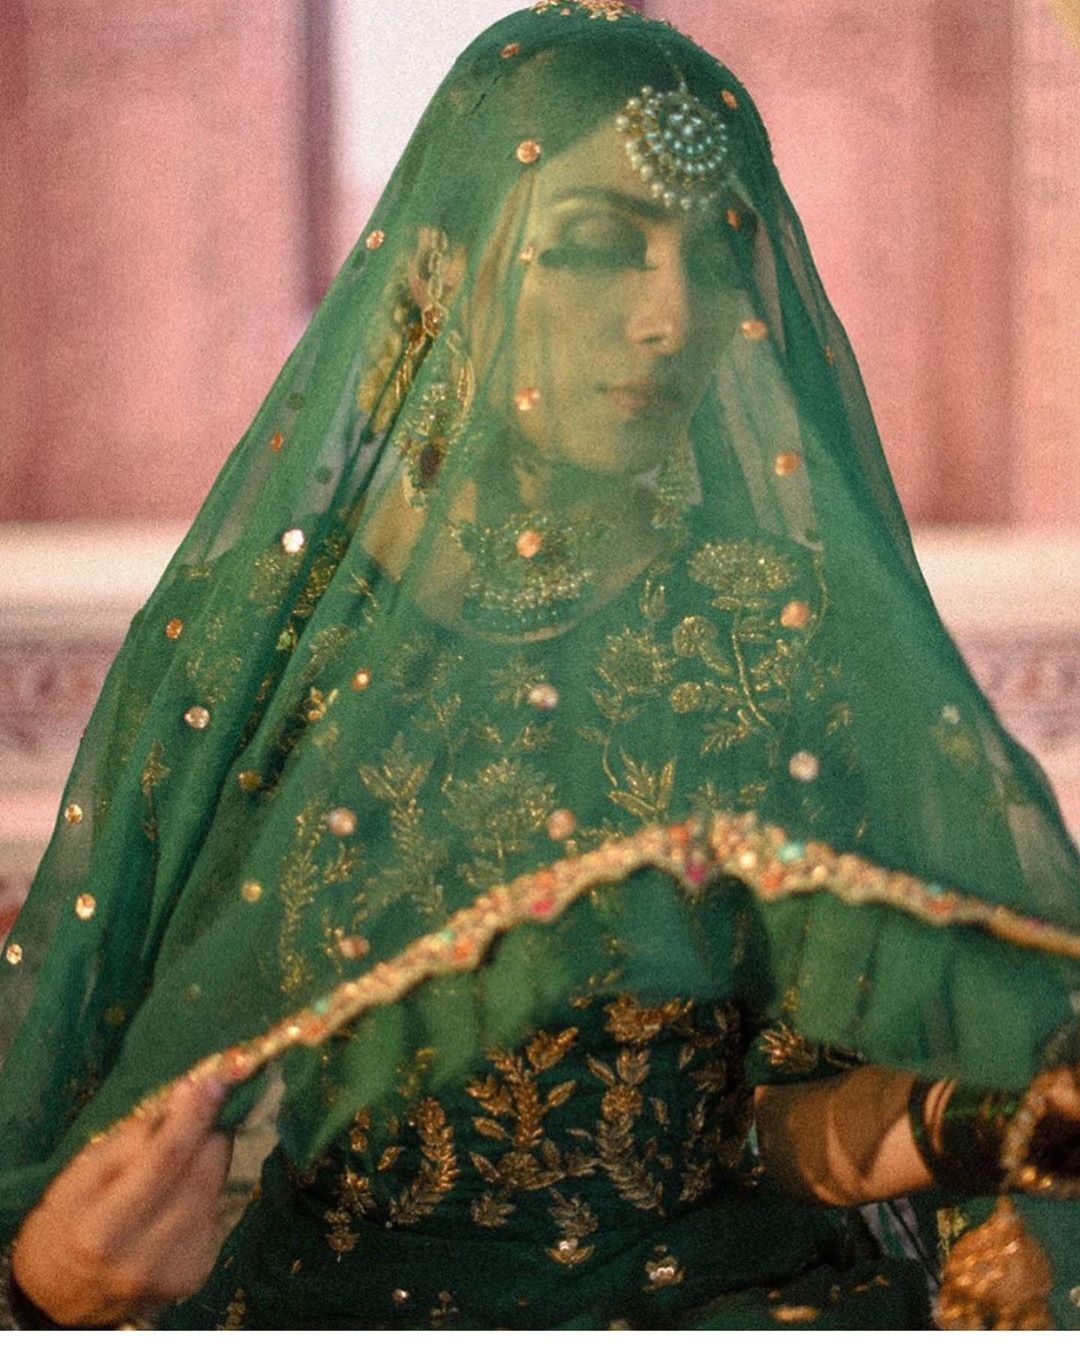 Awesome Bridal Photoshoot of Actress Ayeza Khan